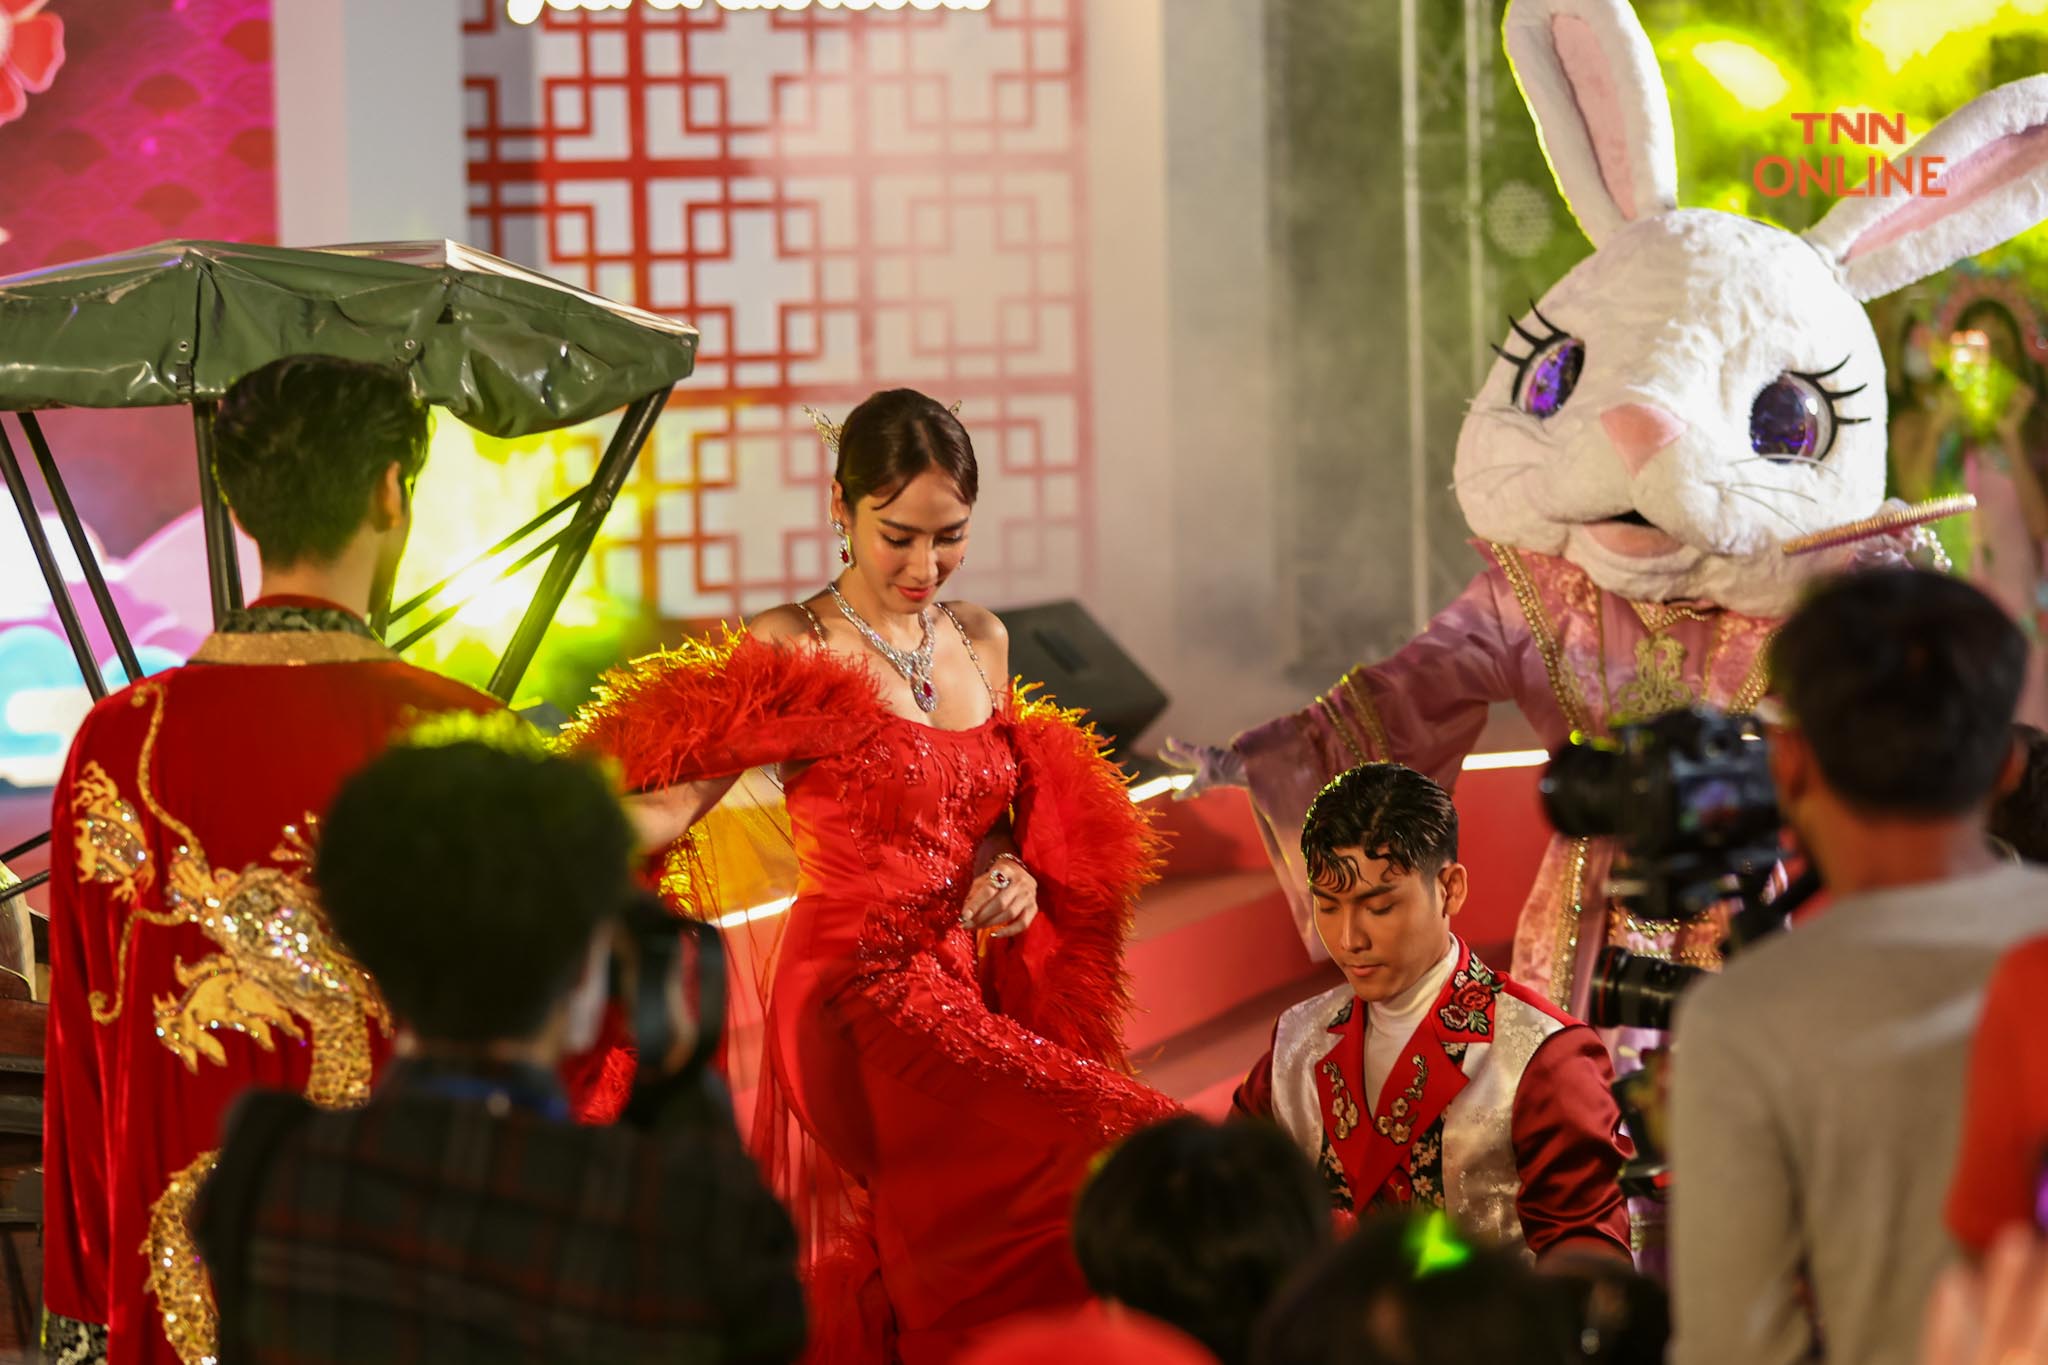 พารากอน ฉลองตรุษจีนปีกระต่ายสุดยิ่งใหญ่ ดึง “อั้ม-อาโป”อวดเครื่องประดับหรูมูลค่ากว่า 98 ล้านบาท